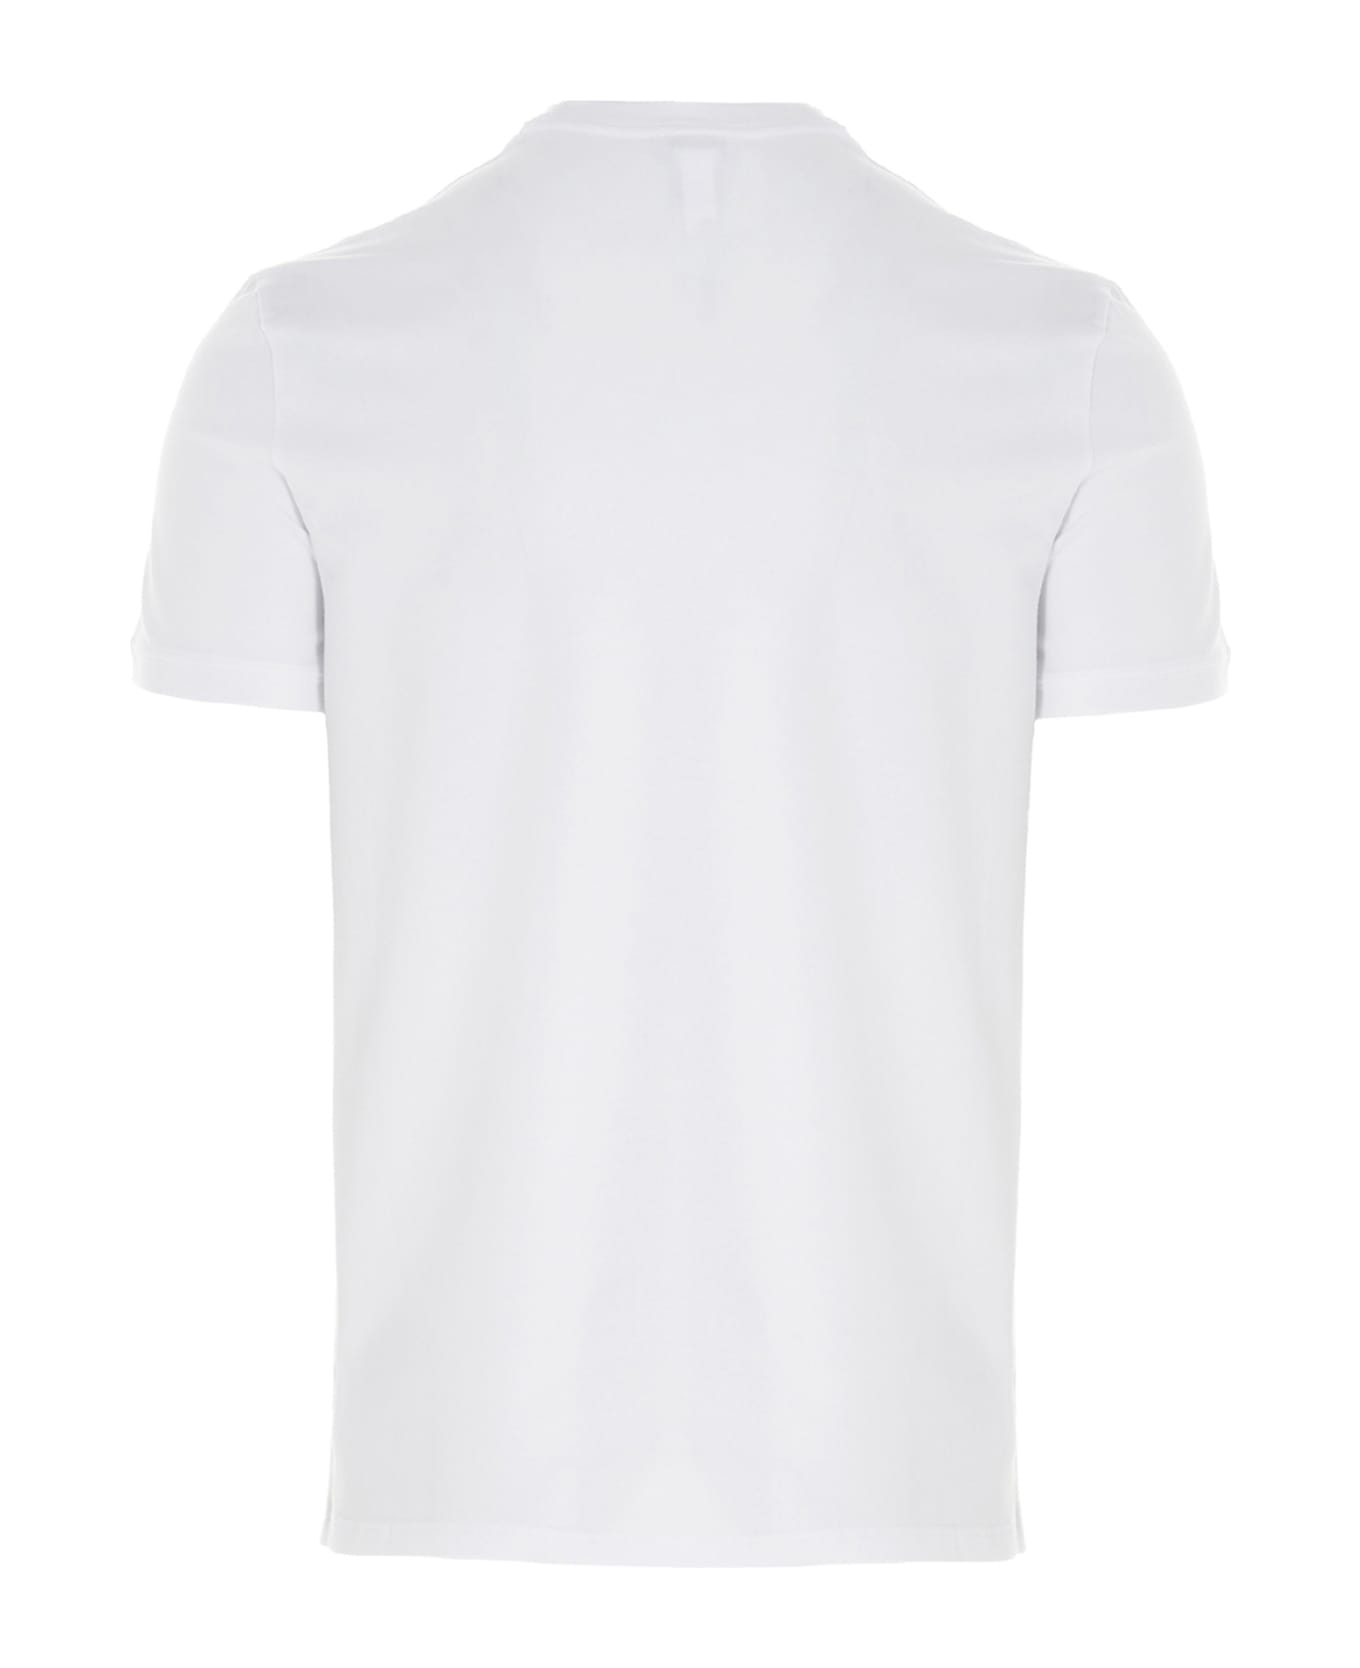 Dolce & Gabbana 'underwear' T-shirt - White